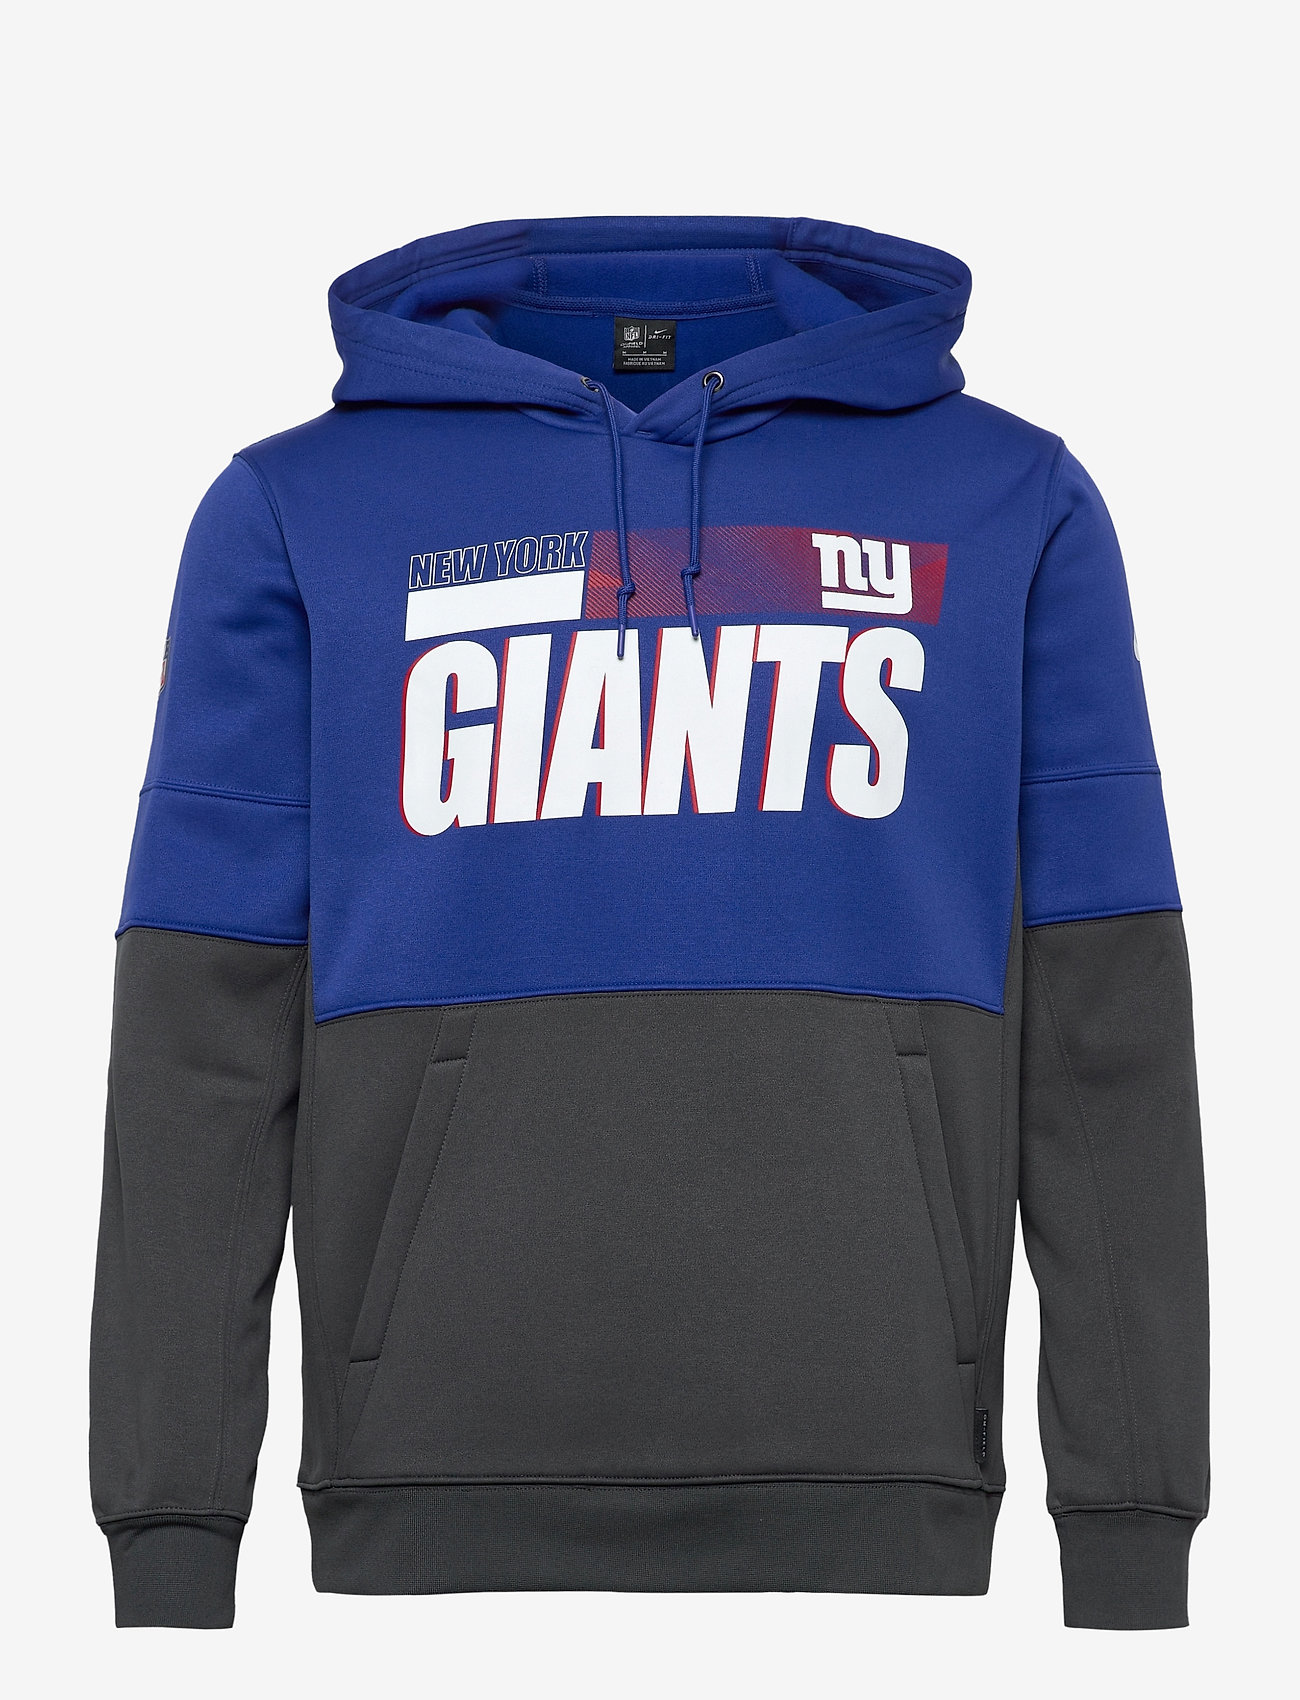 nike giants hoodie